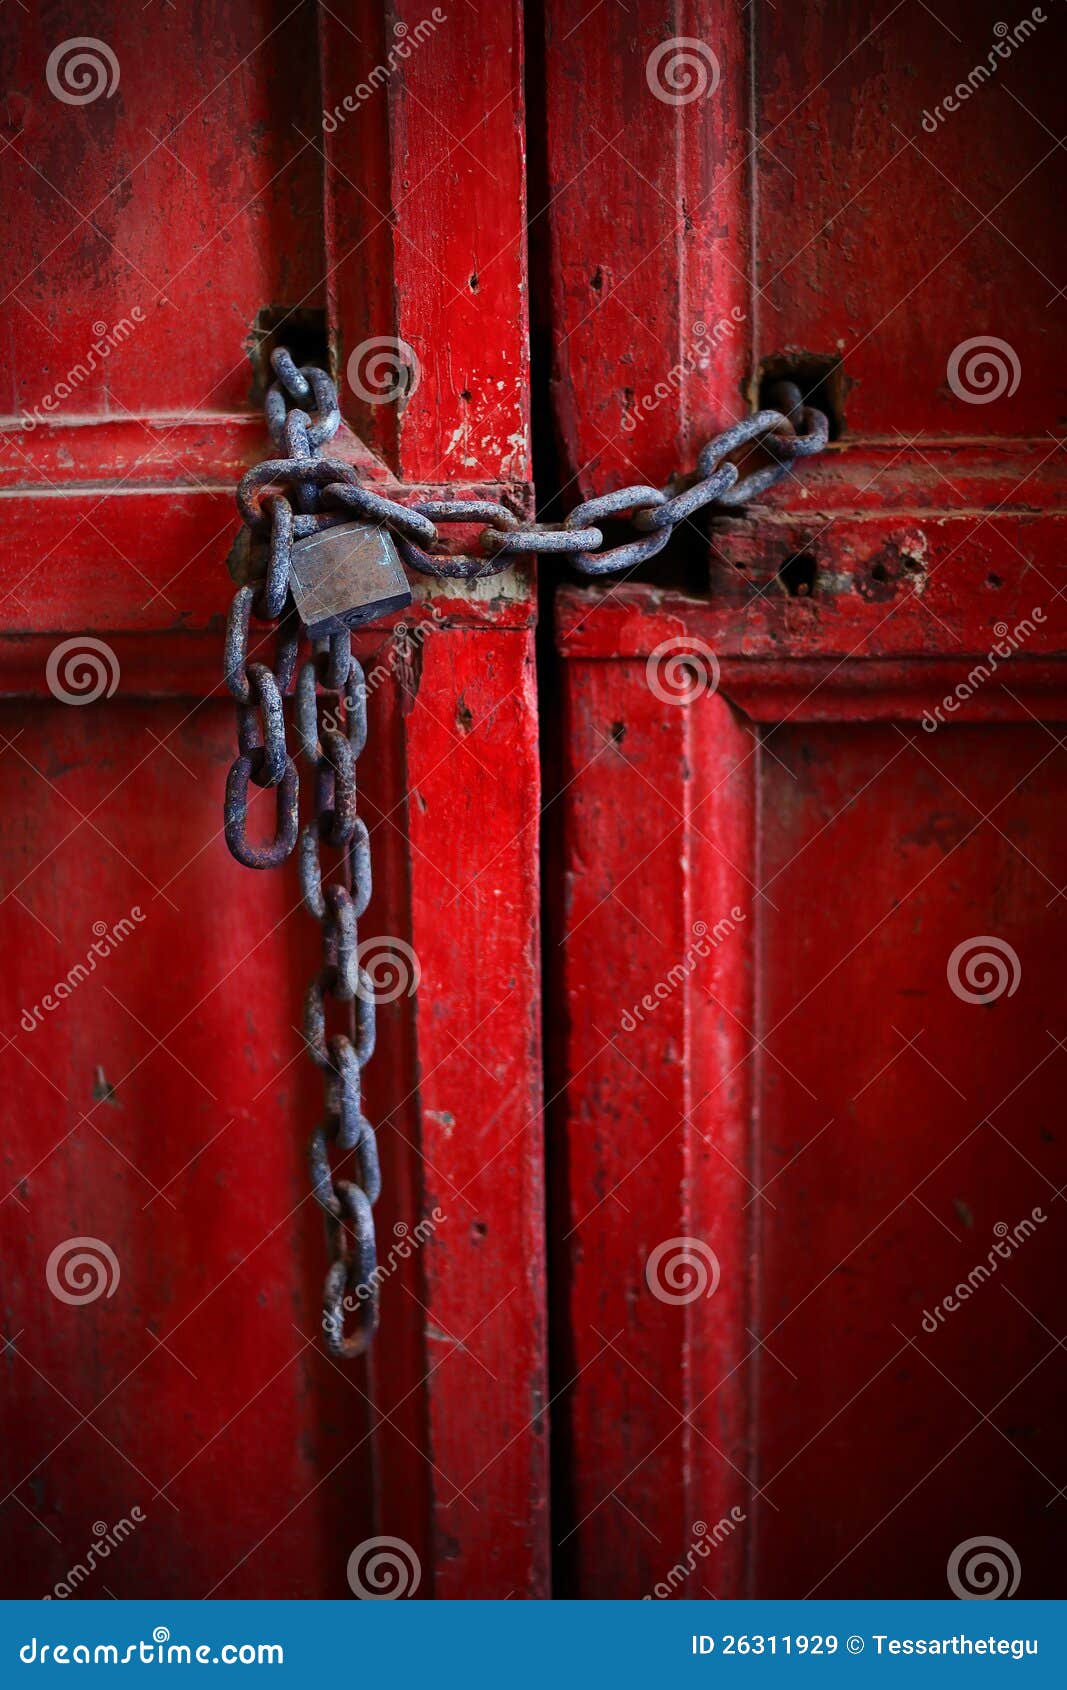 Запераю или запираю. Цепь на дверь. Дверь с цепями арт. Красная дверная ручка. Картонки на дверь красные.